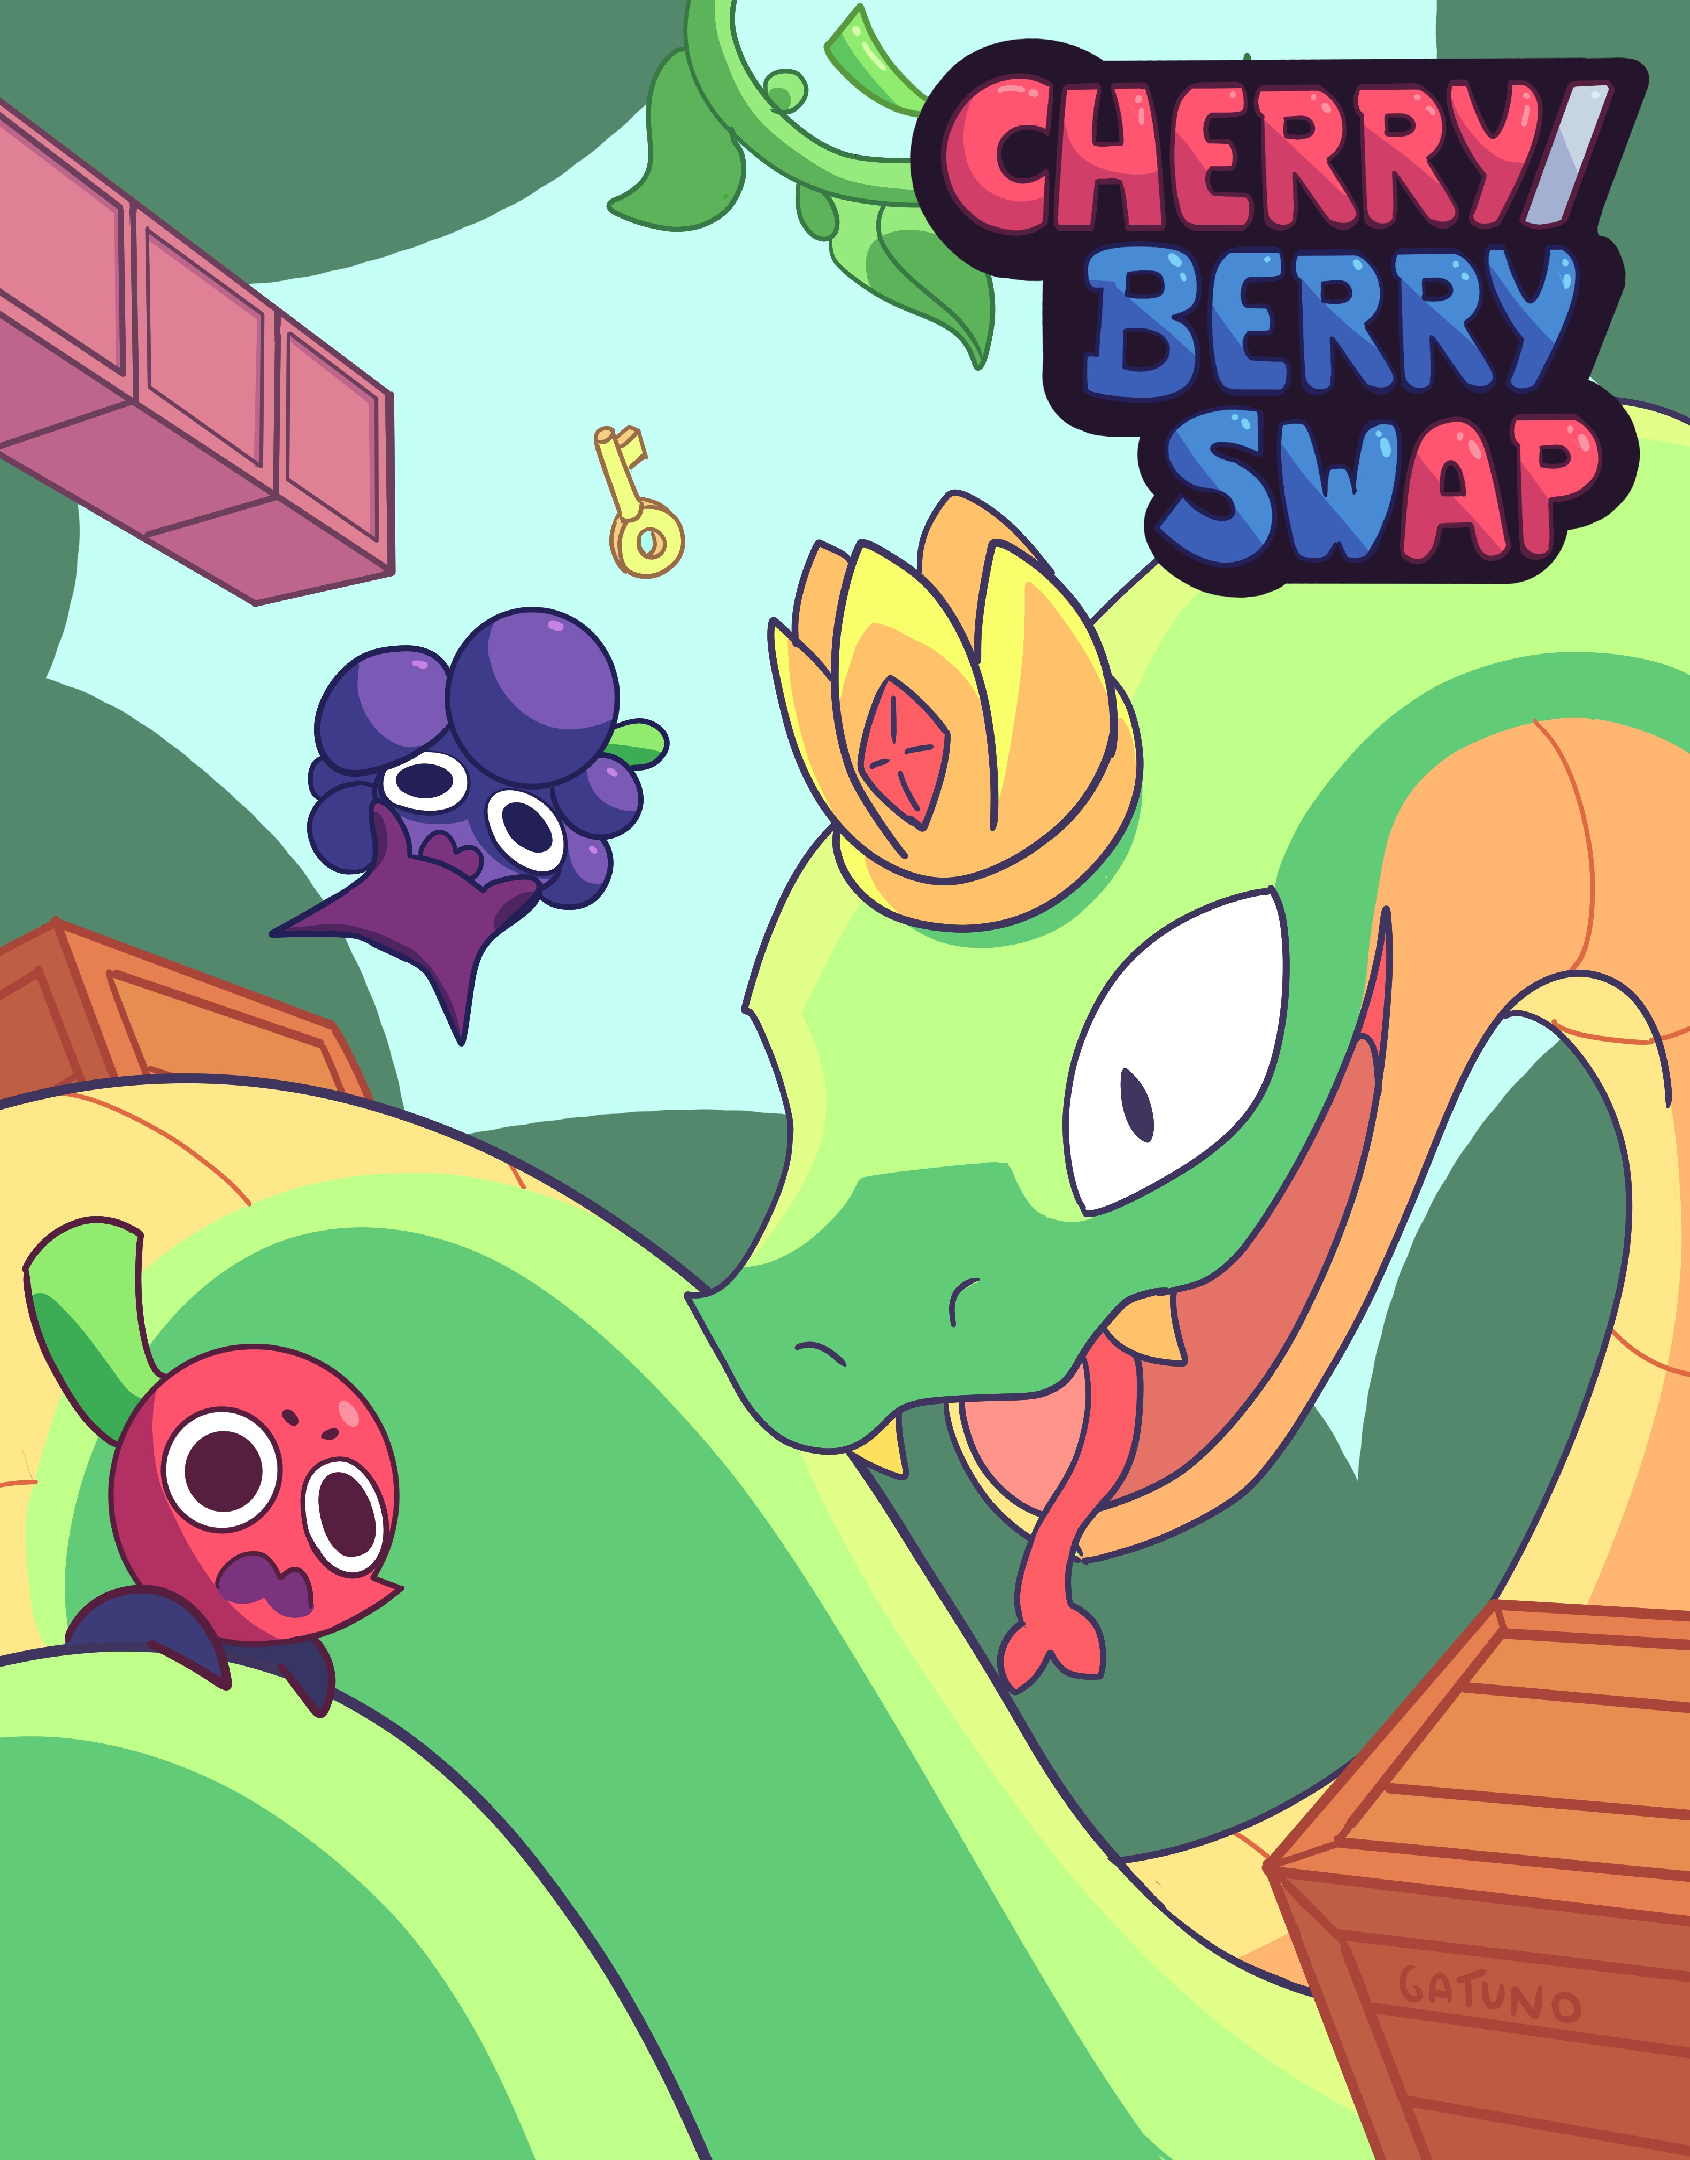 Cherry/Berry swap